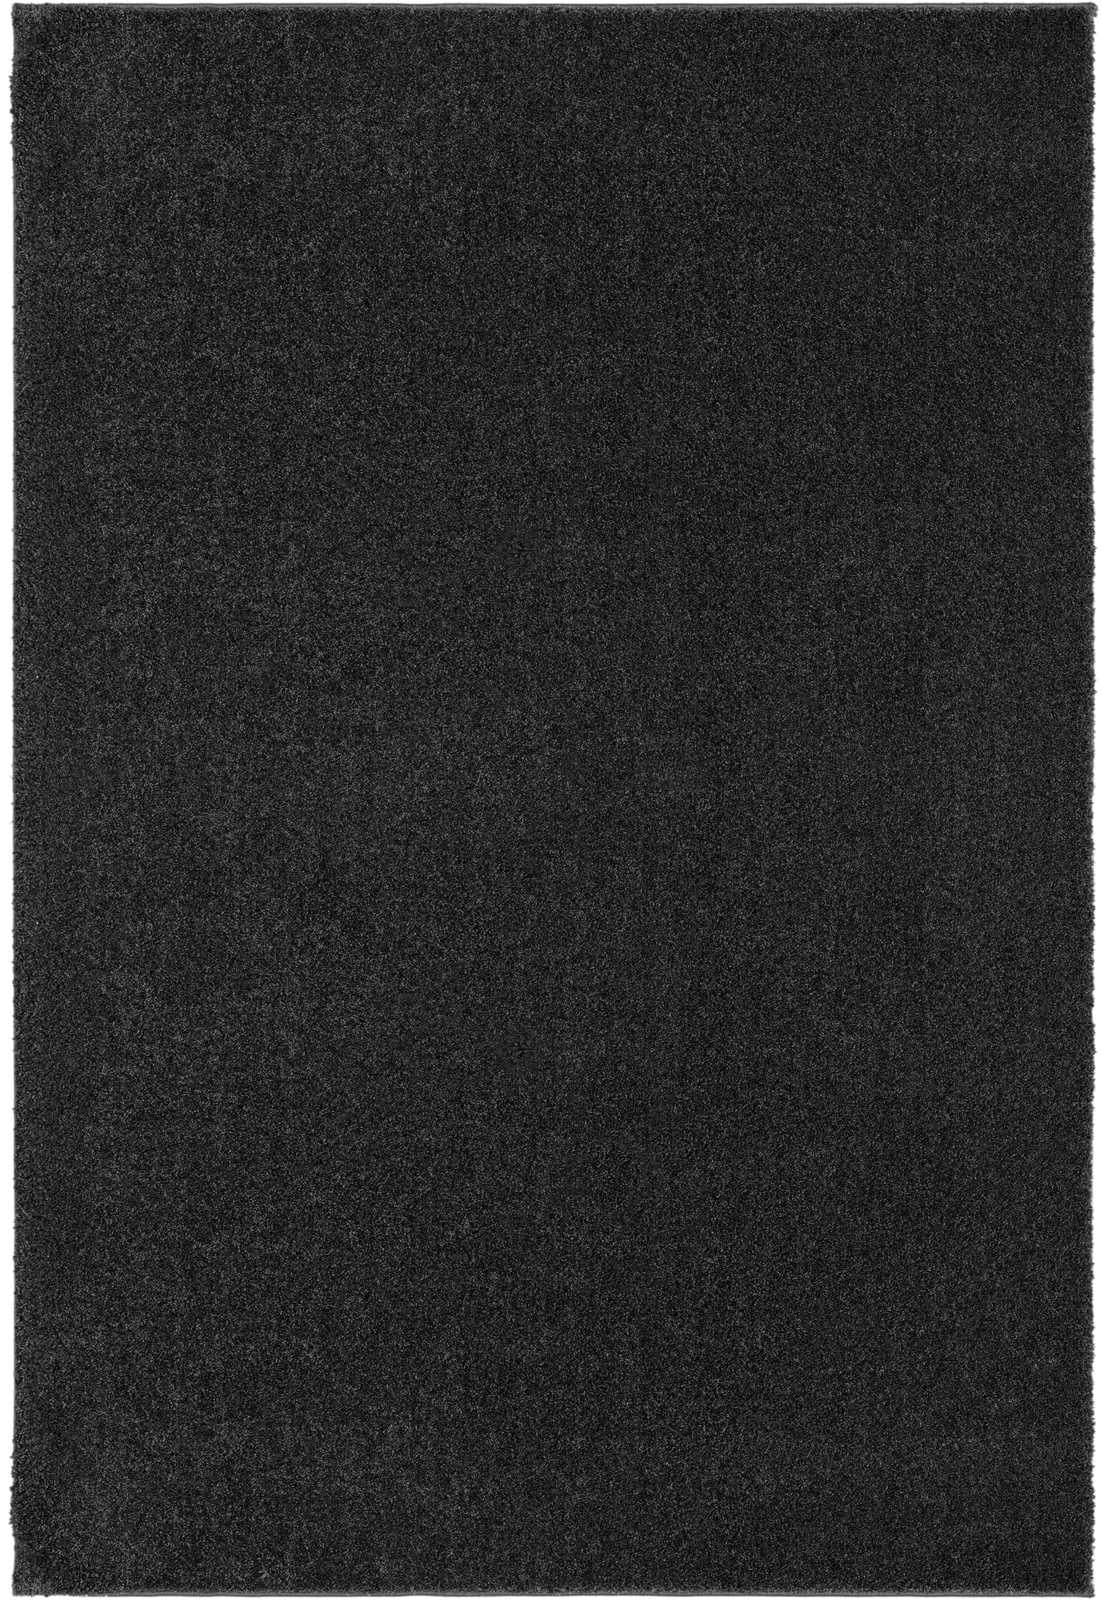             Zacht kortpolig tapijt in antraciet - 290 x 200 cm
        